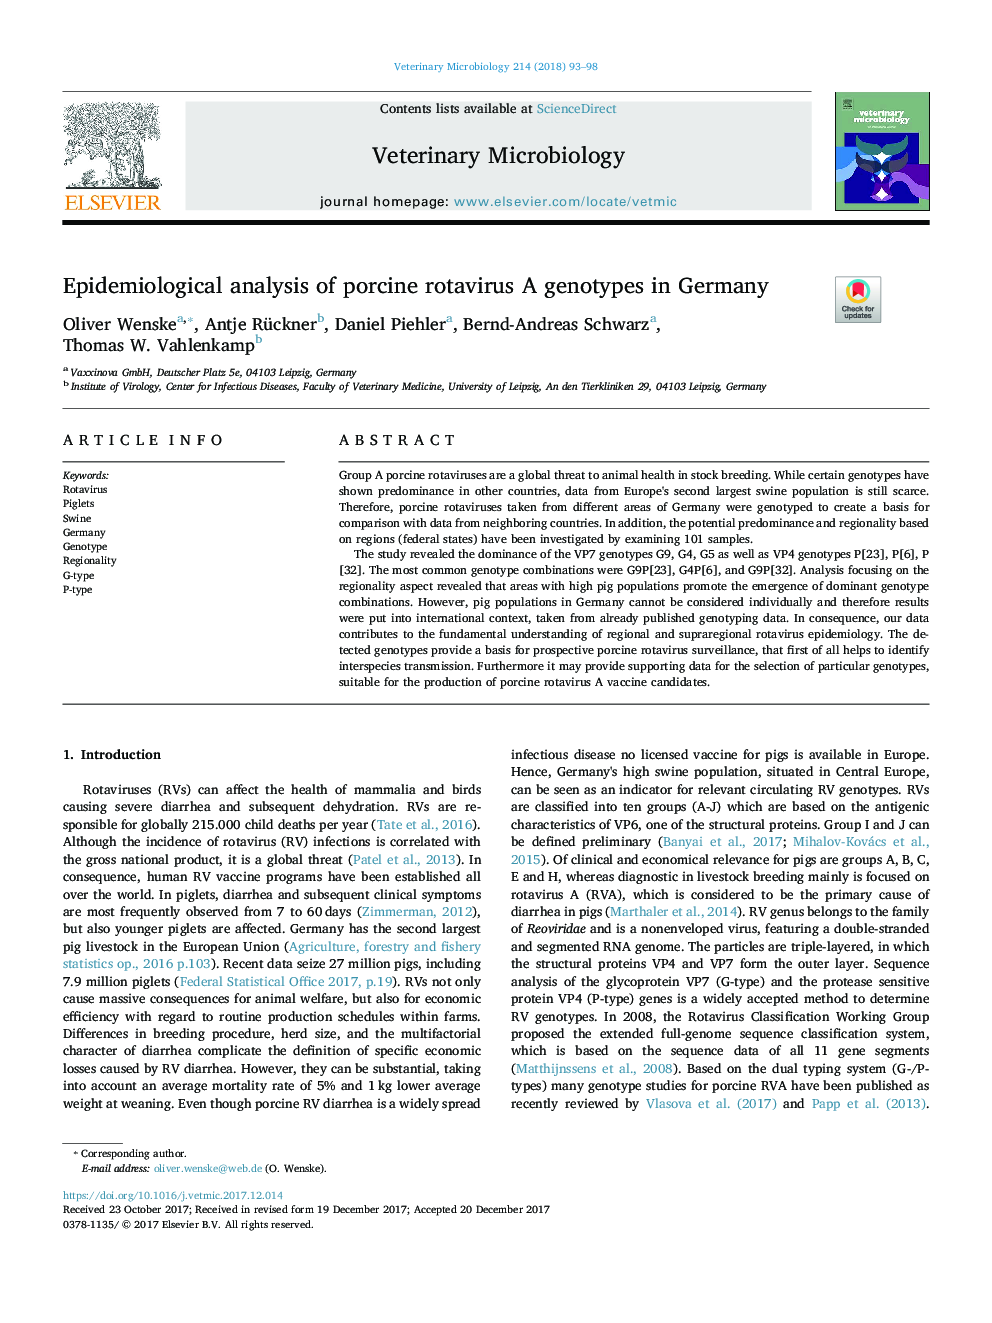 تجزیه و تحلیل اپیدمیولوژیک ژنوتیپ های روتاویو گوسفند در آلمان 